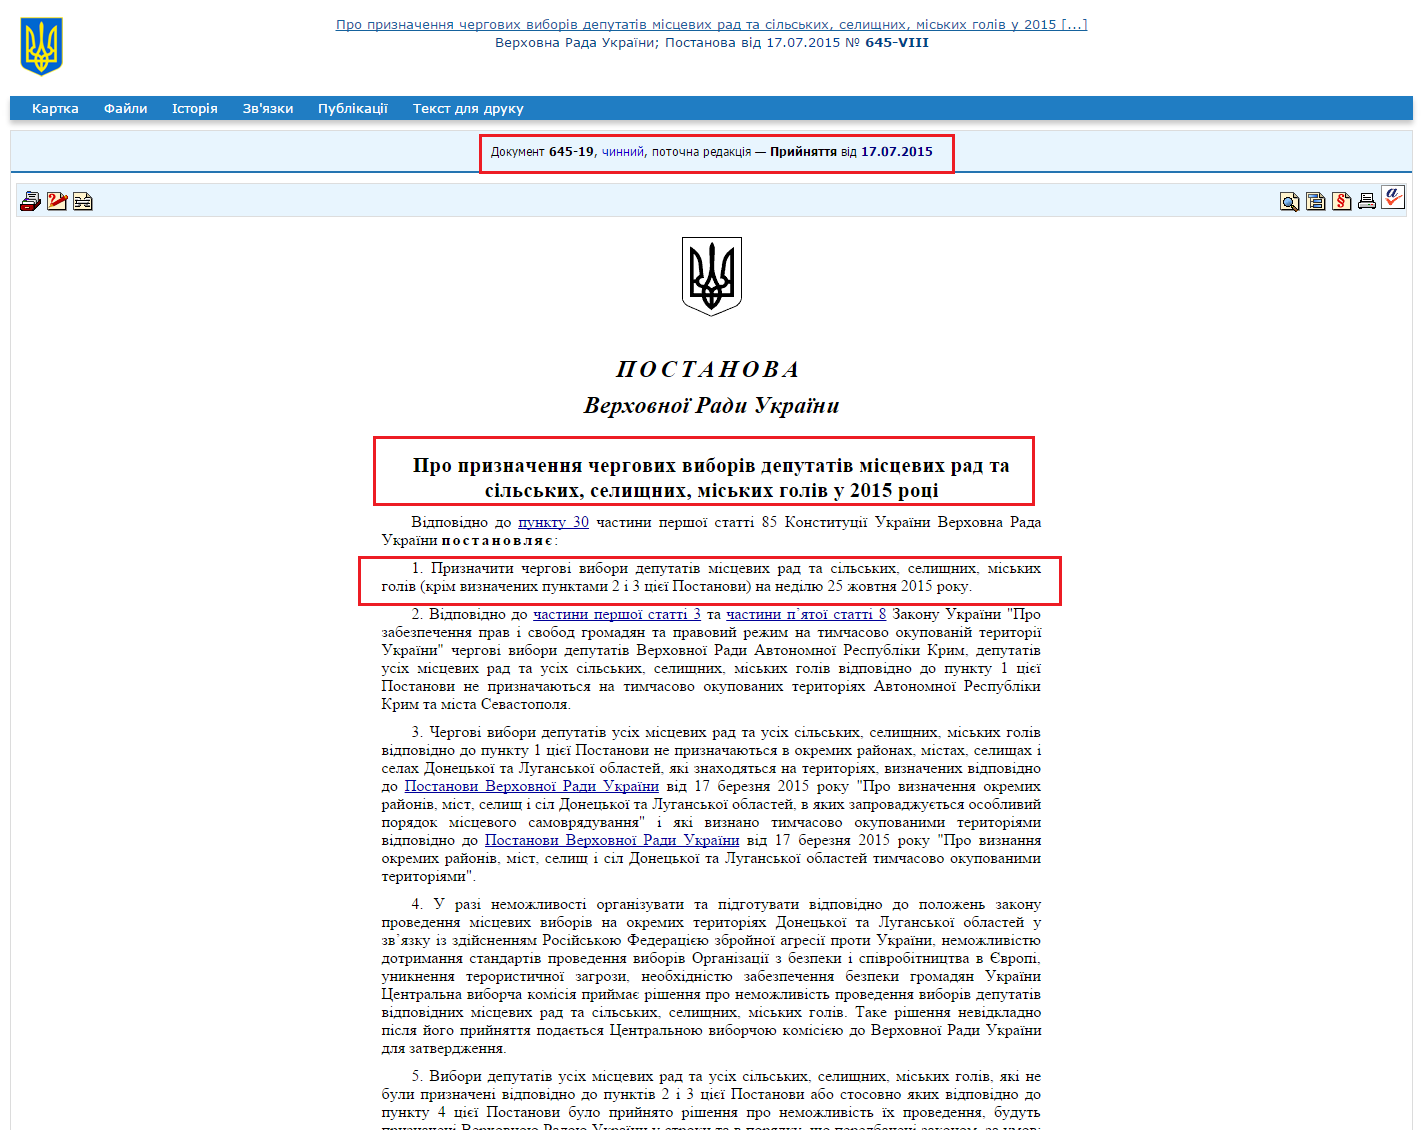 http://zakon4.rada.gov.ua/laws/show/645-19